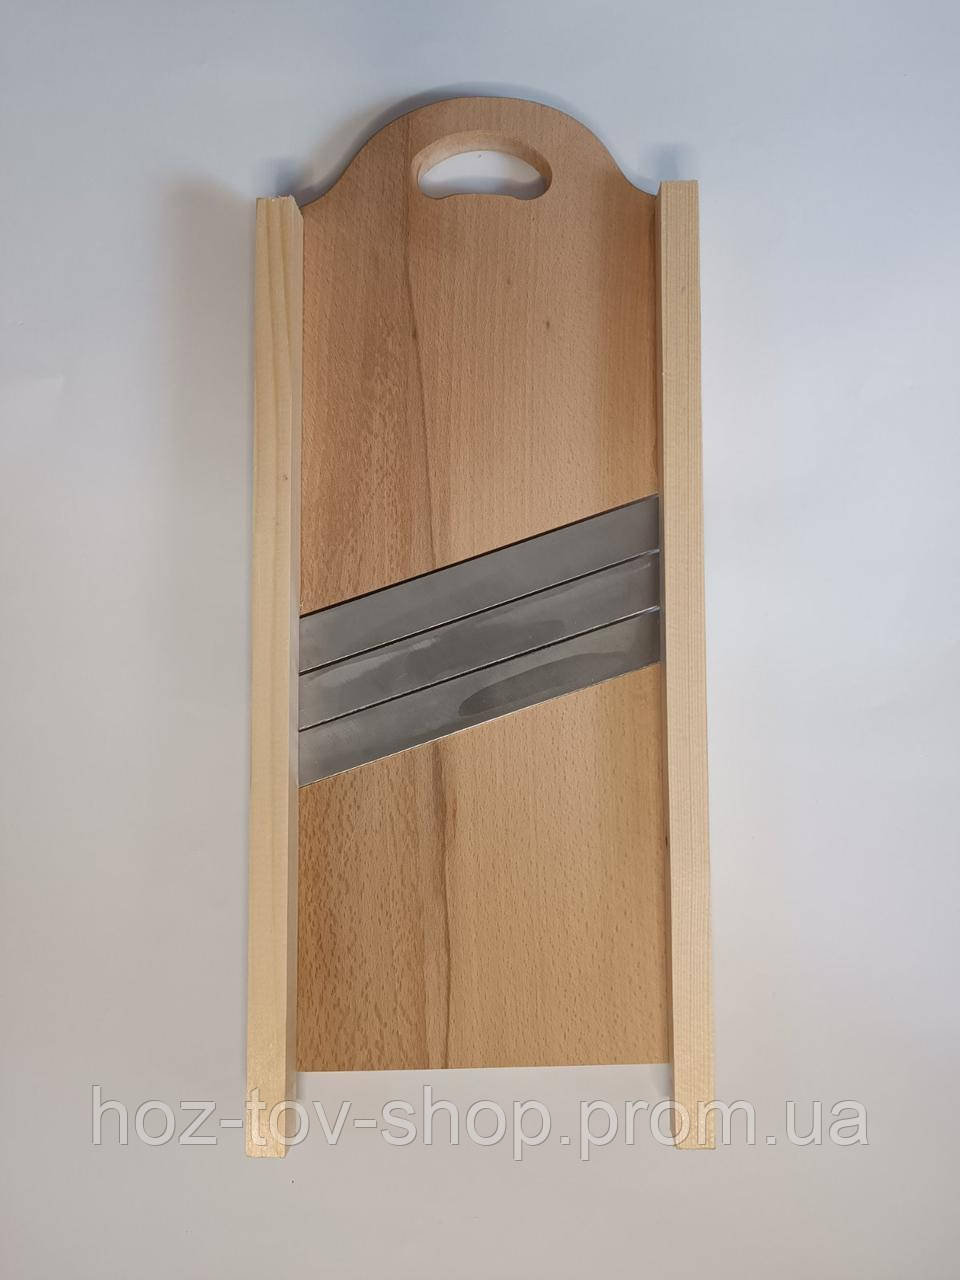 Дерев'яна шаткування з трьома ножами (бук) розмір 20*48 см.